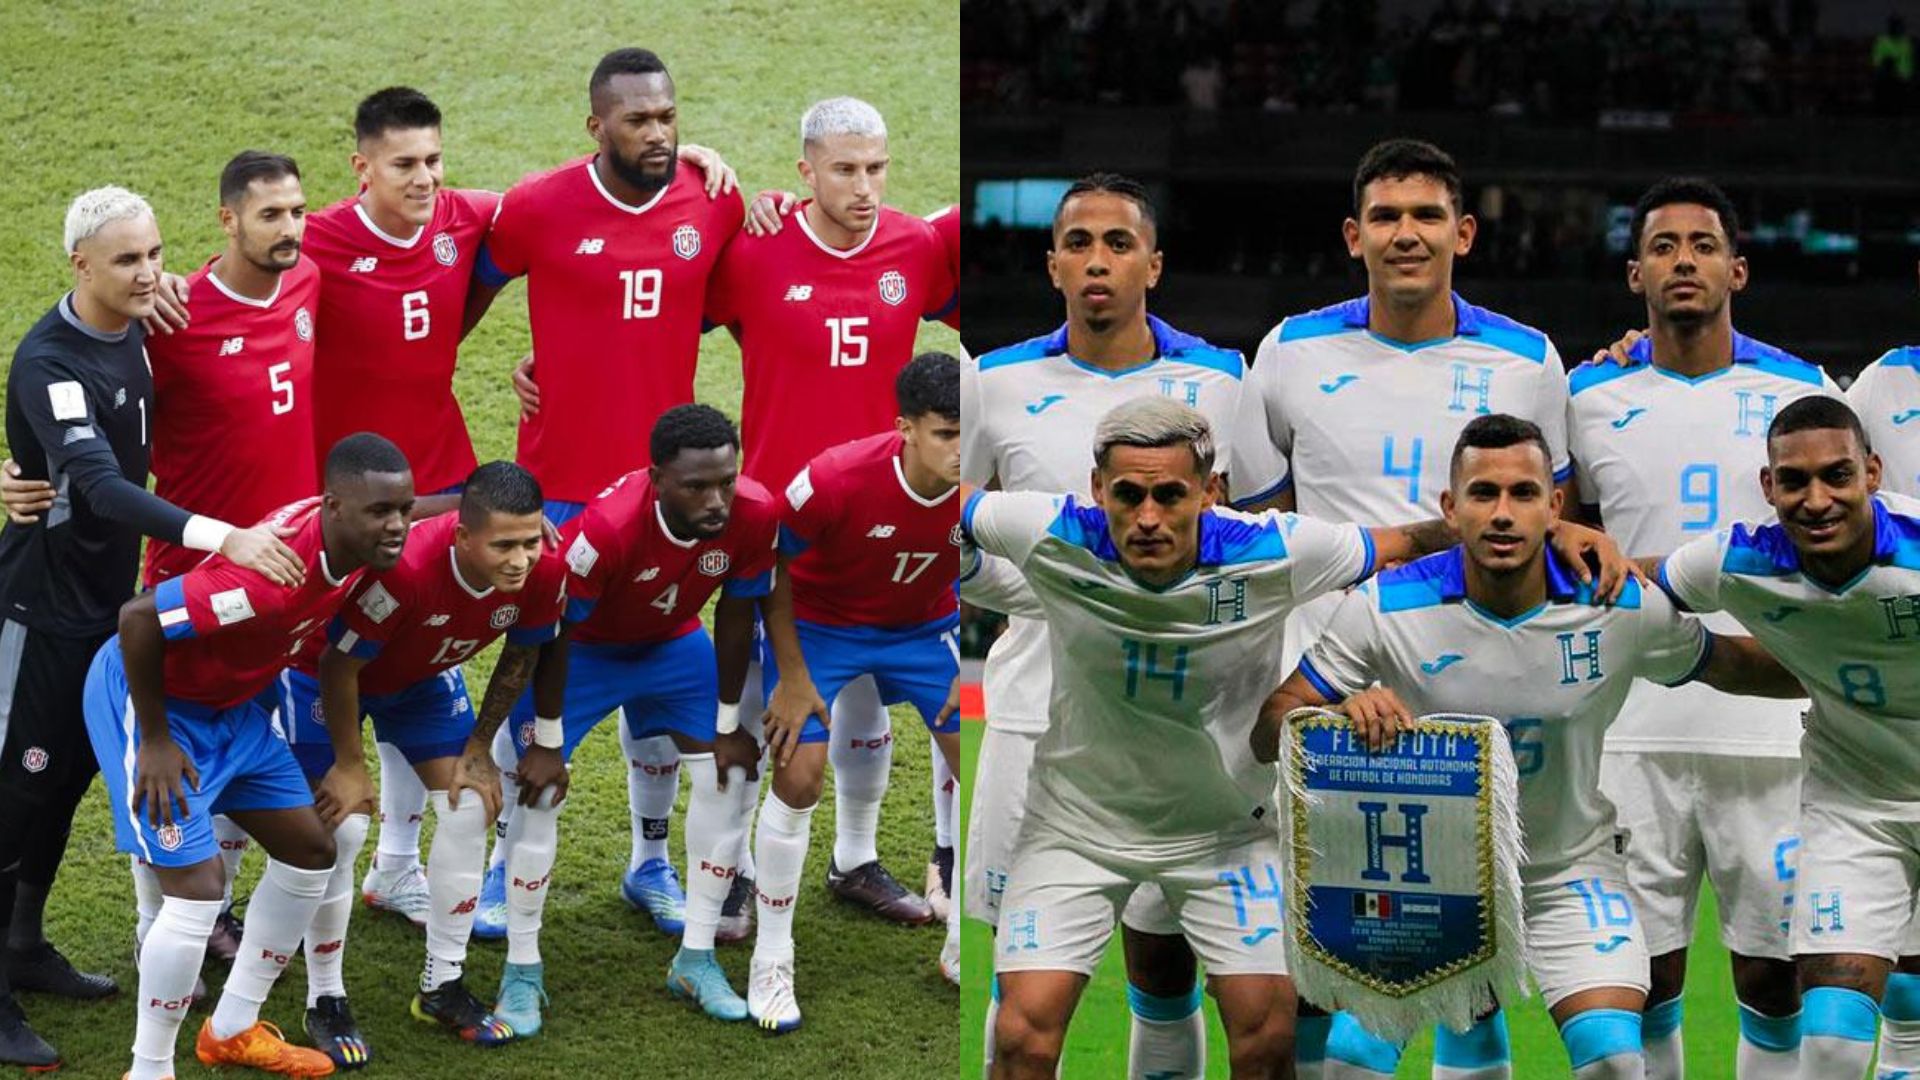 Honduras vs Costa Rica, es un clásico que todo Centroamérica quiere ver, pues se estará jugando un boleto a la Copa América, un torneo que ayuda llegar al Mundial 2026.